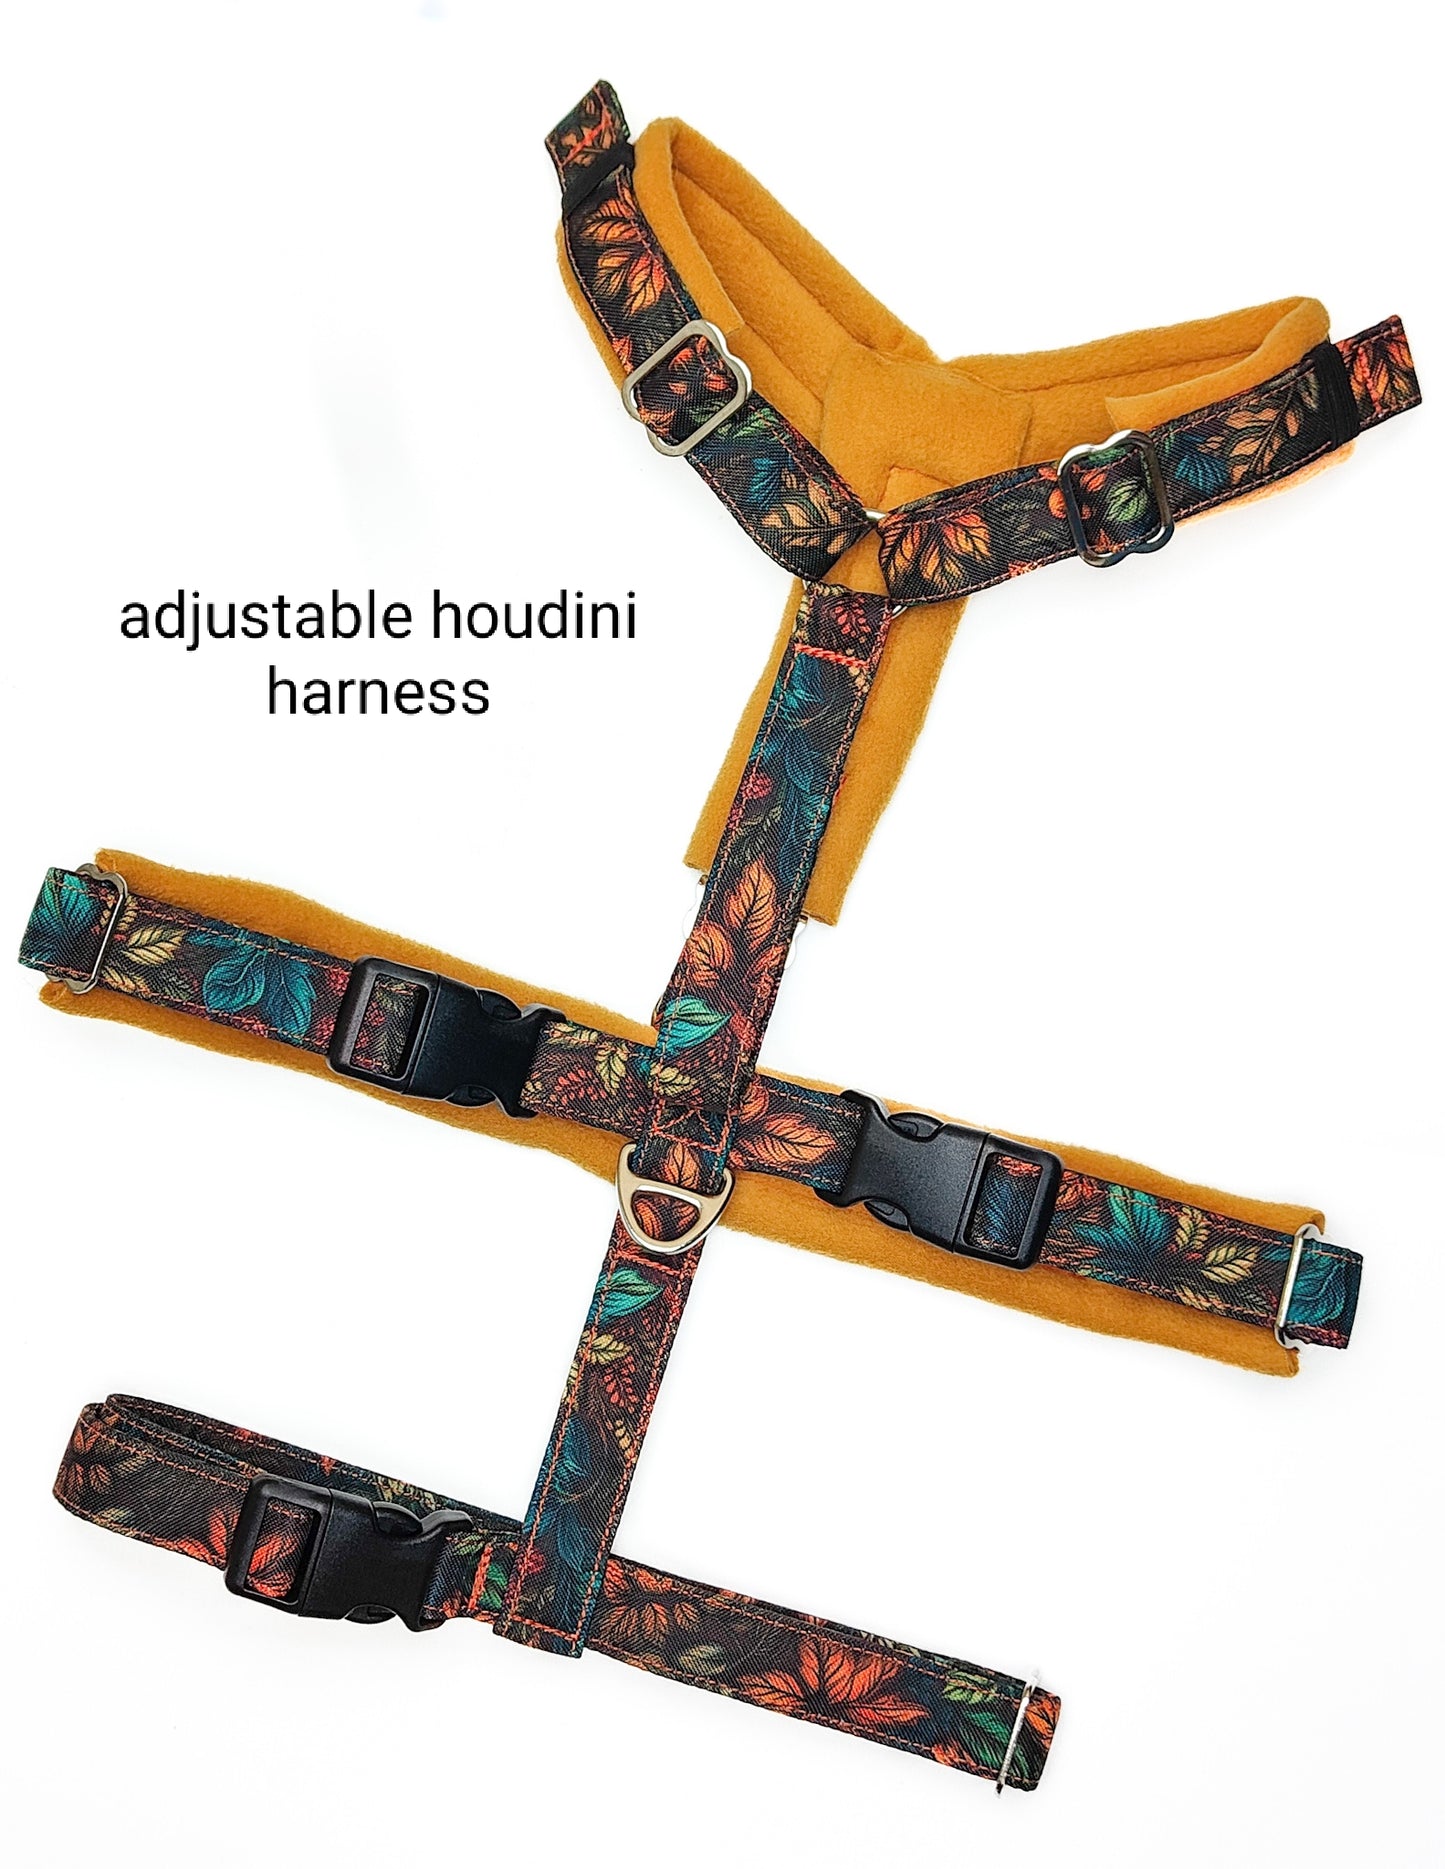 Patterned Dog Harnesses